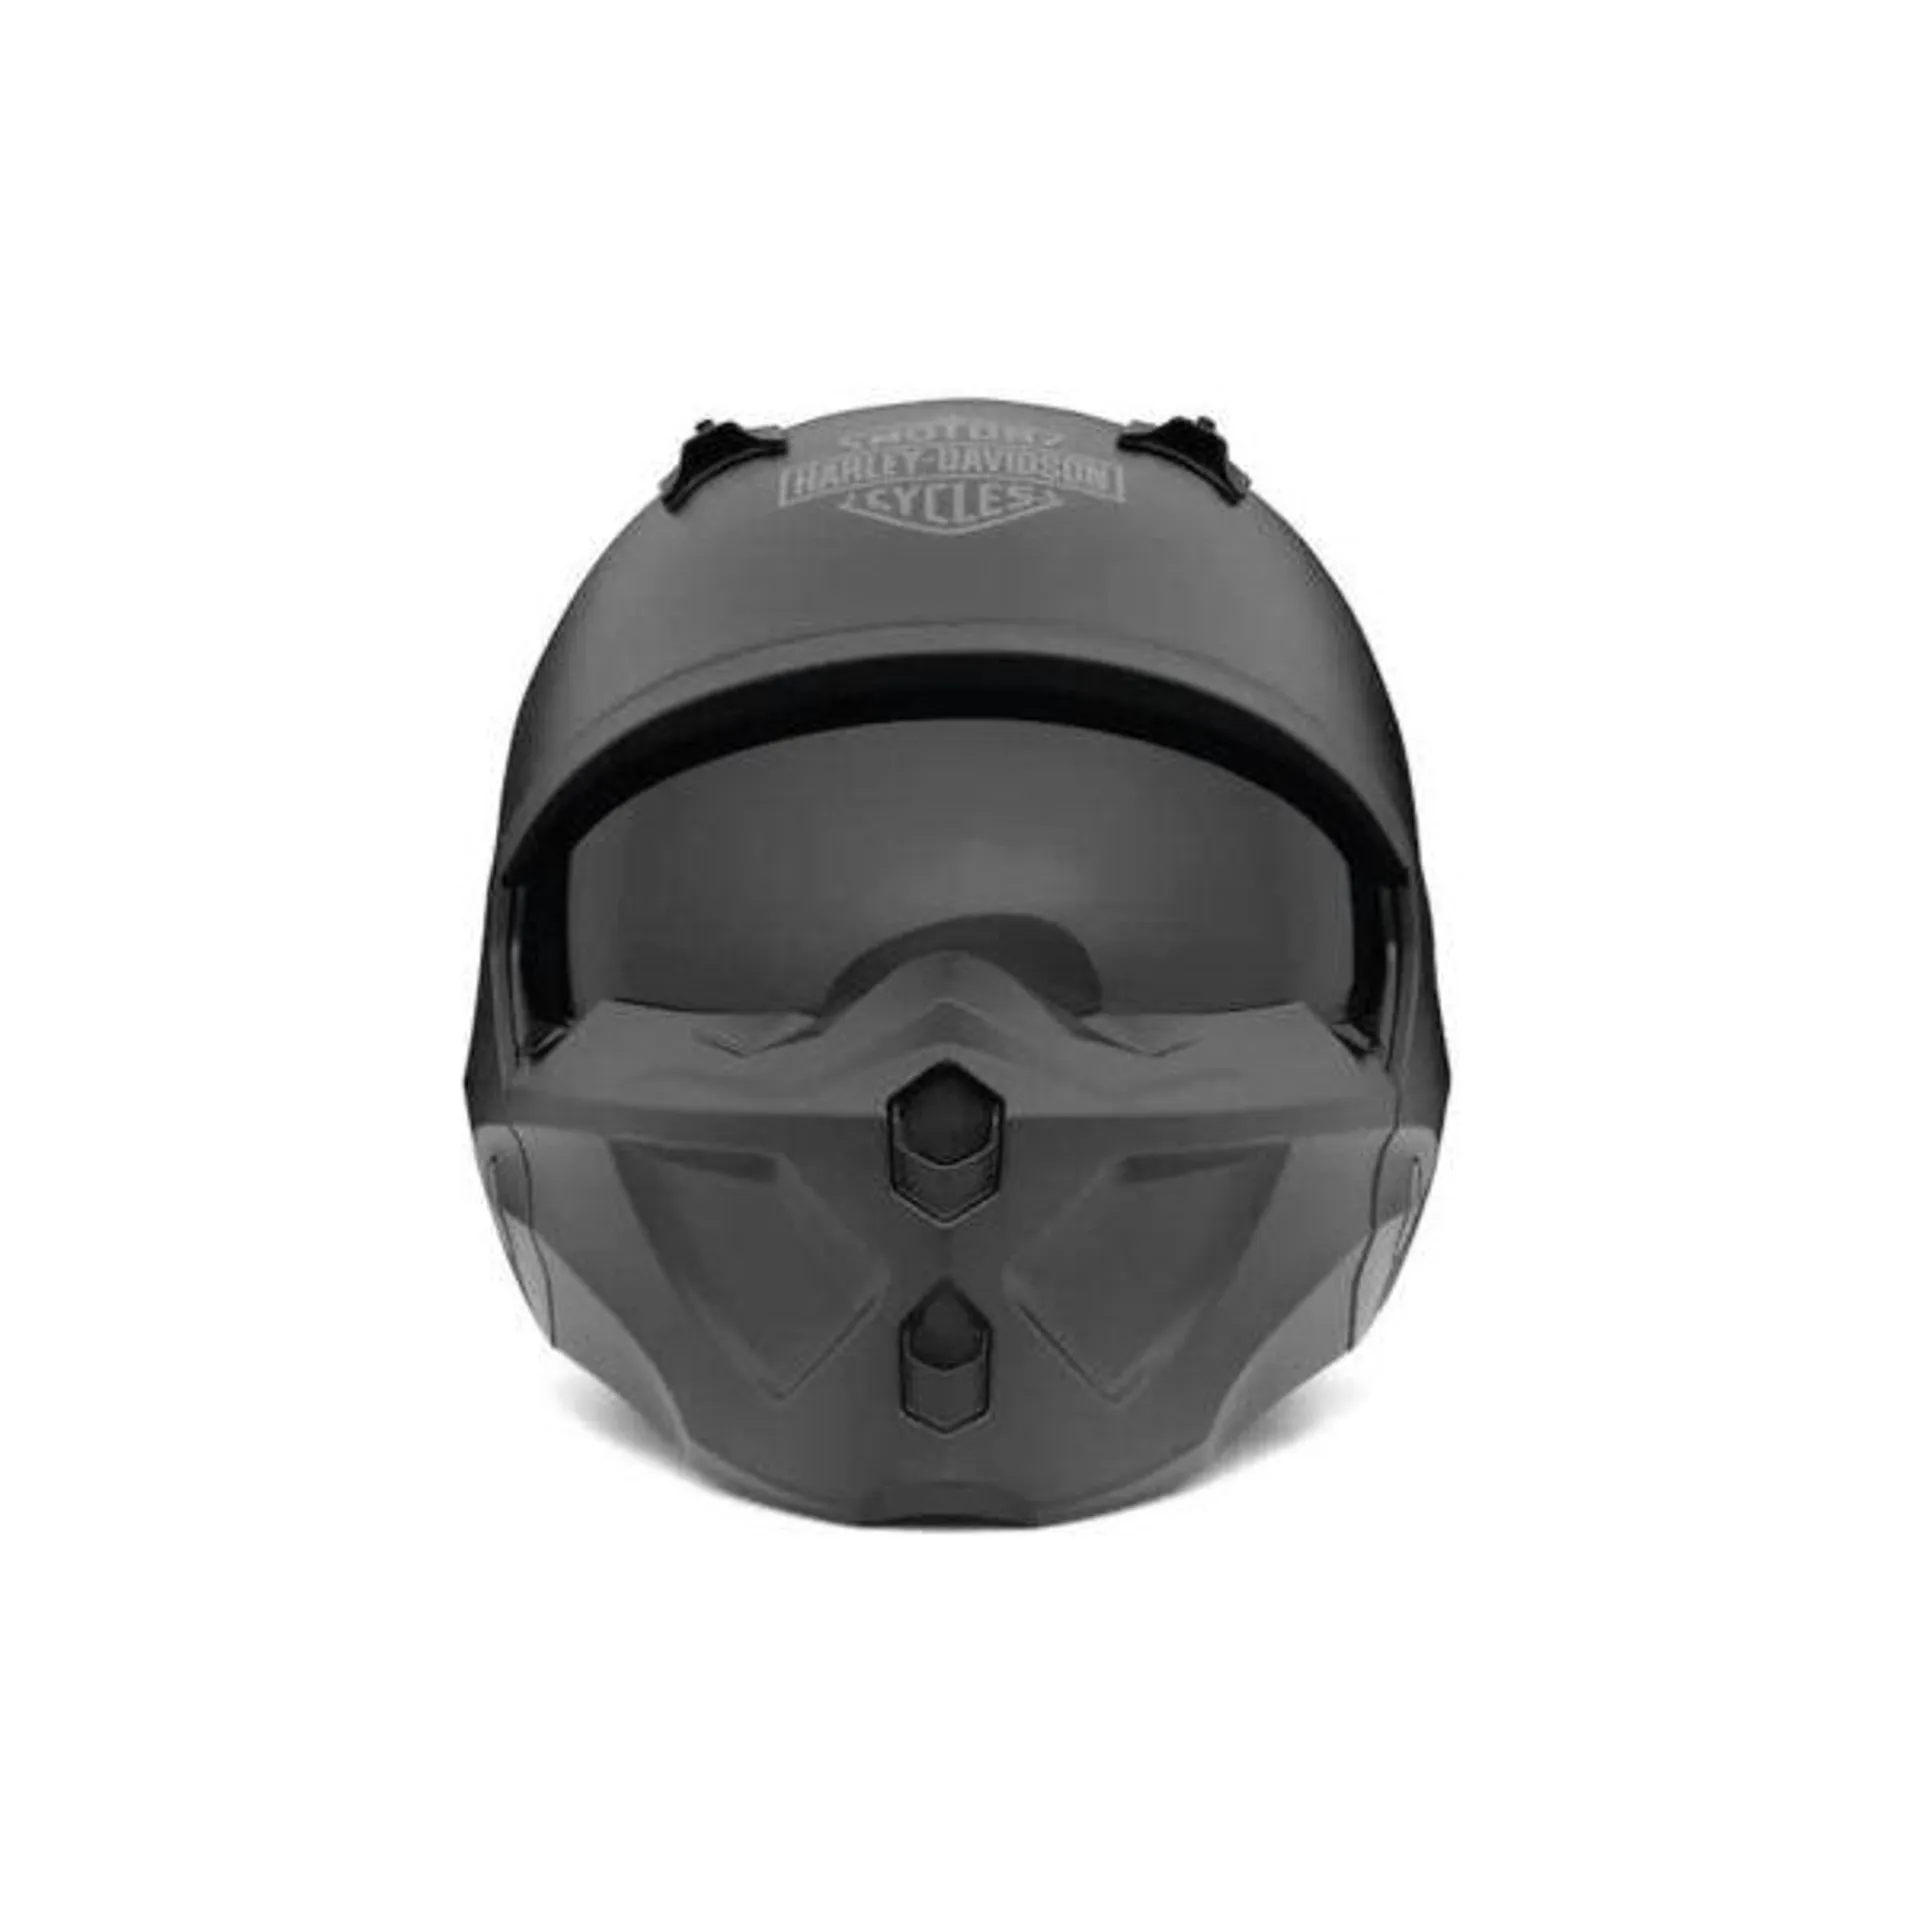 Gargoyle X07 2-in-1 Helmet